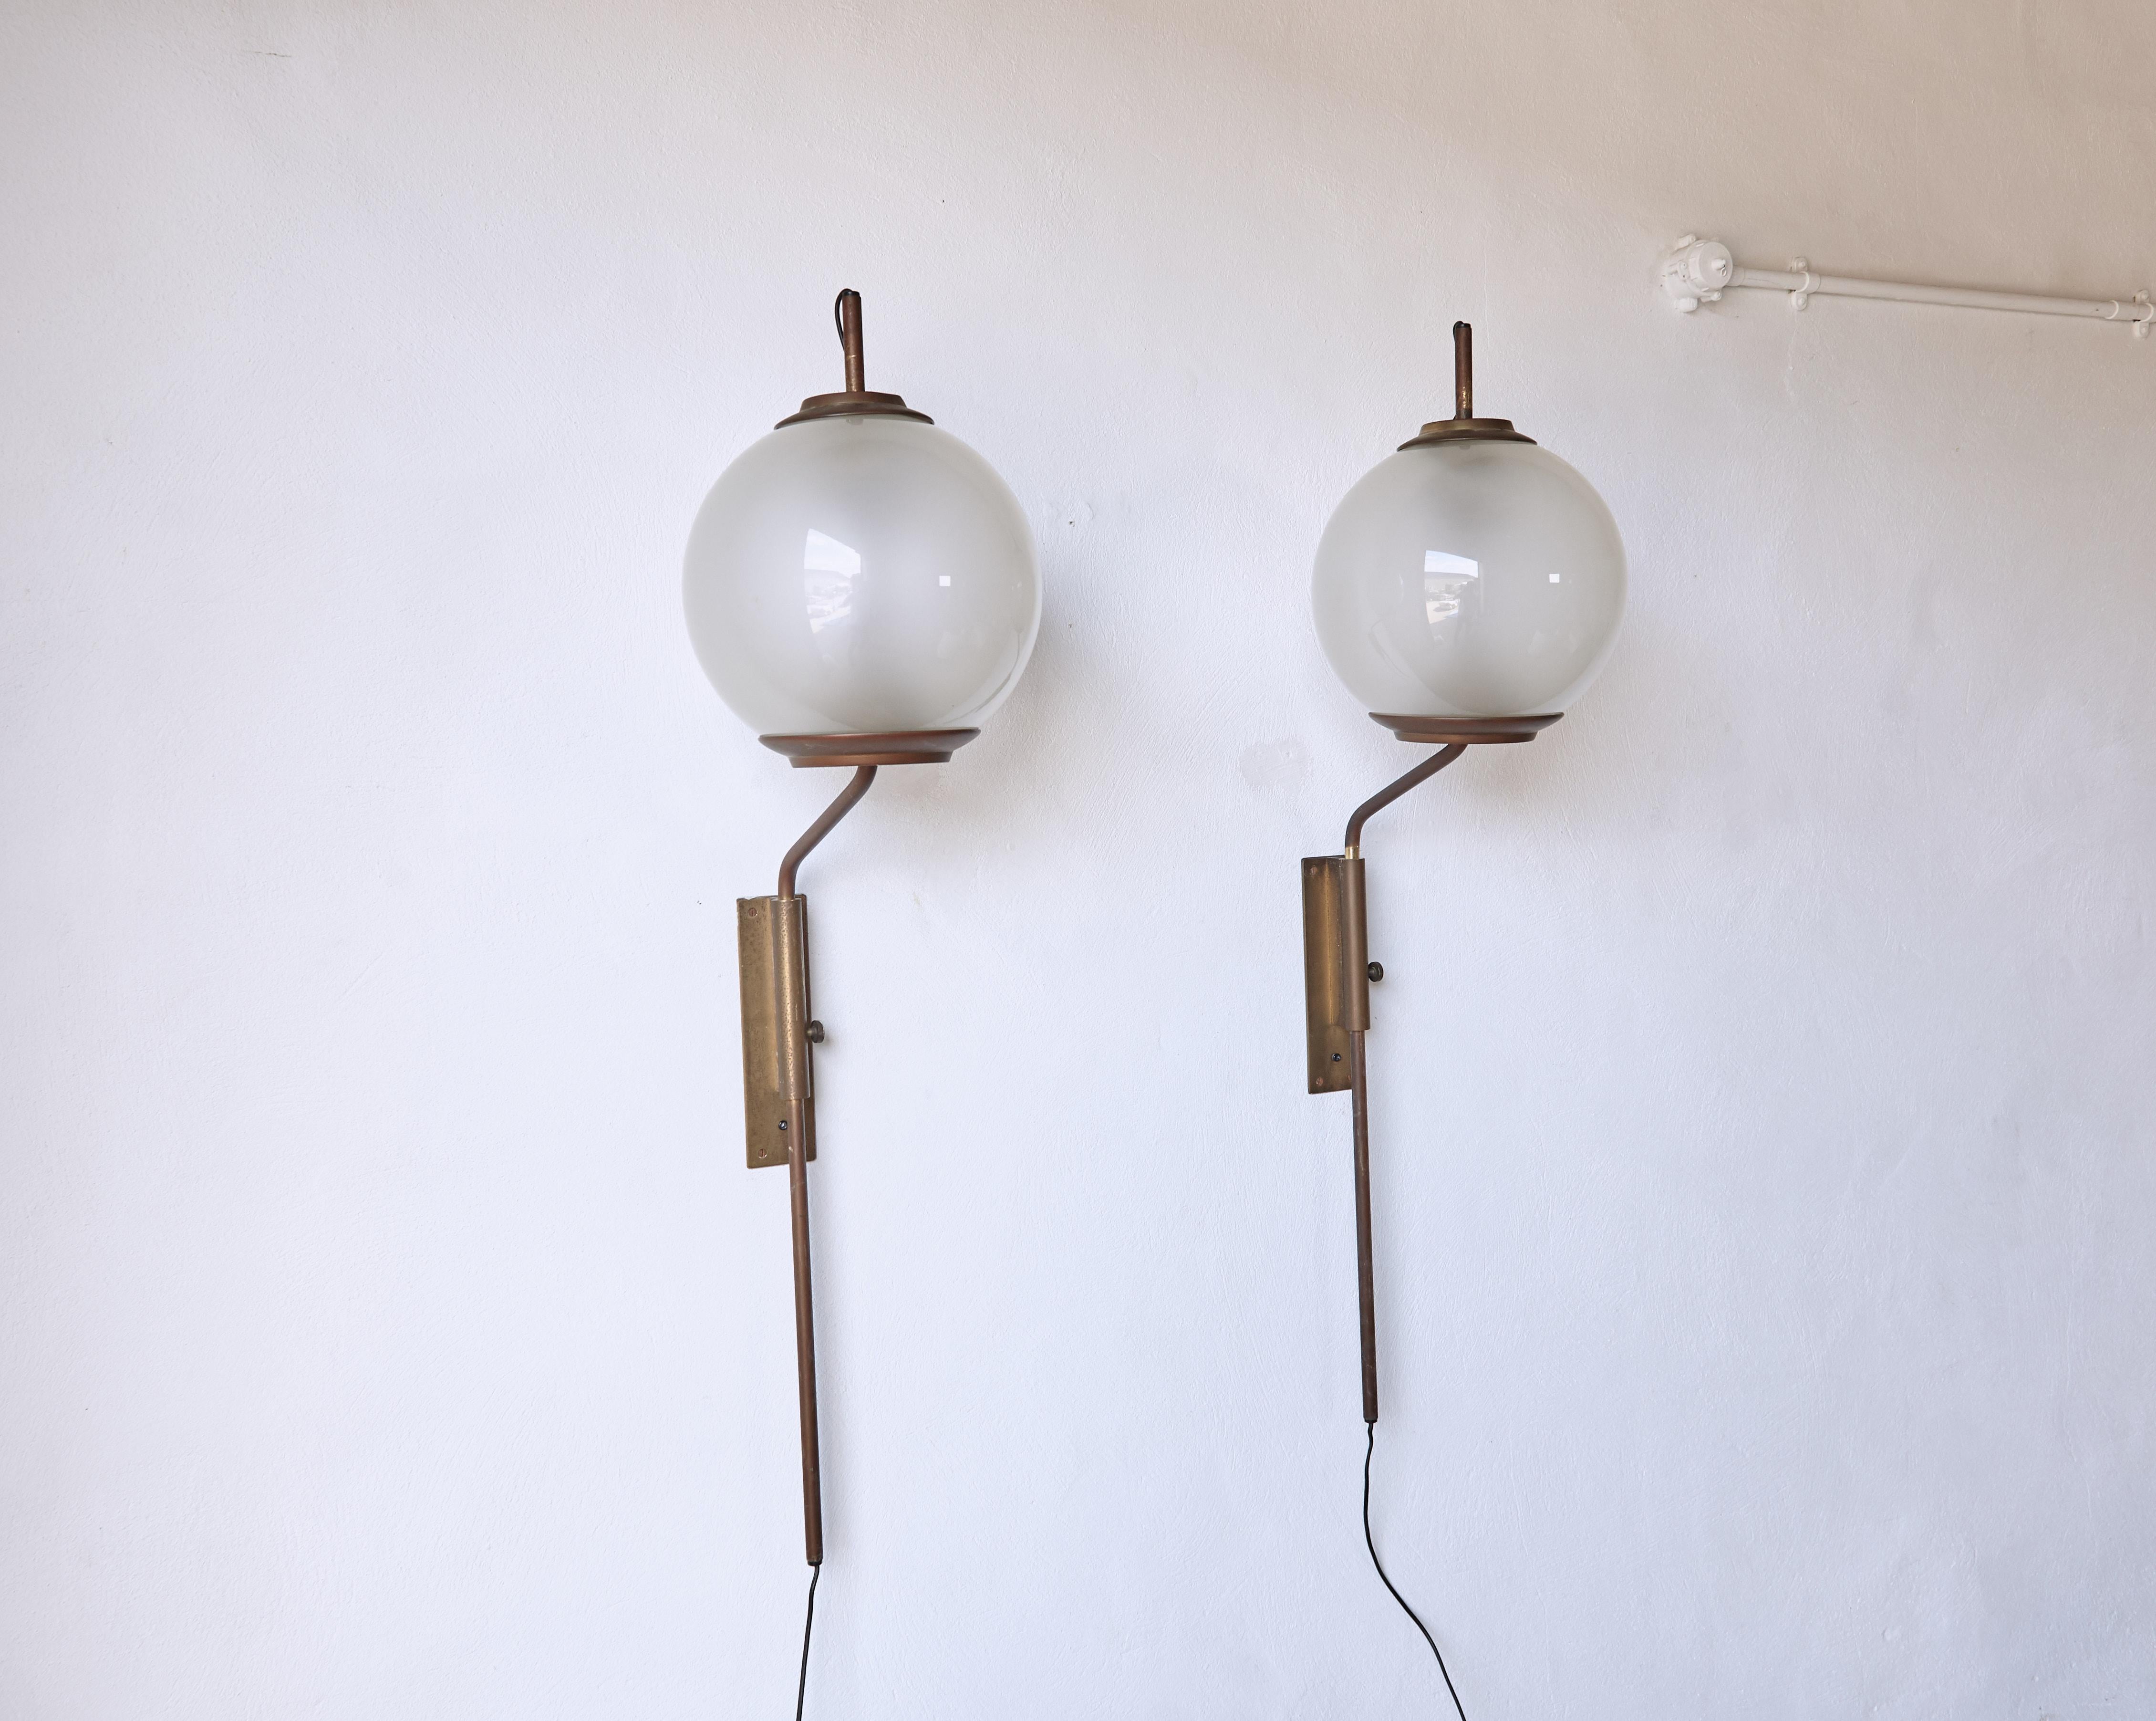 Brass Luigi Caccia Dominioni LP11 / Pallone Wall Lamps, Azucena, Italy, 1950s